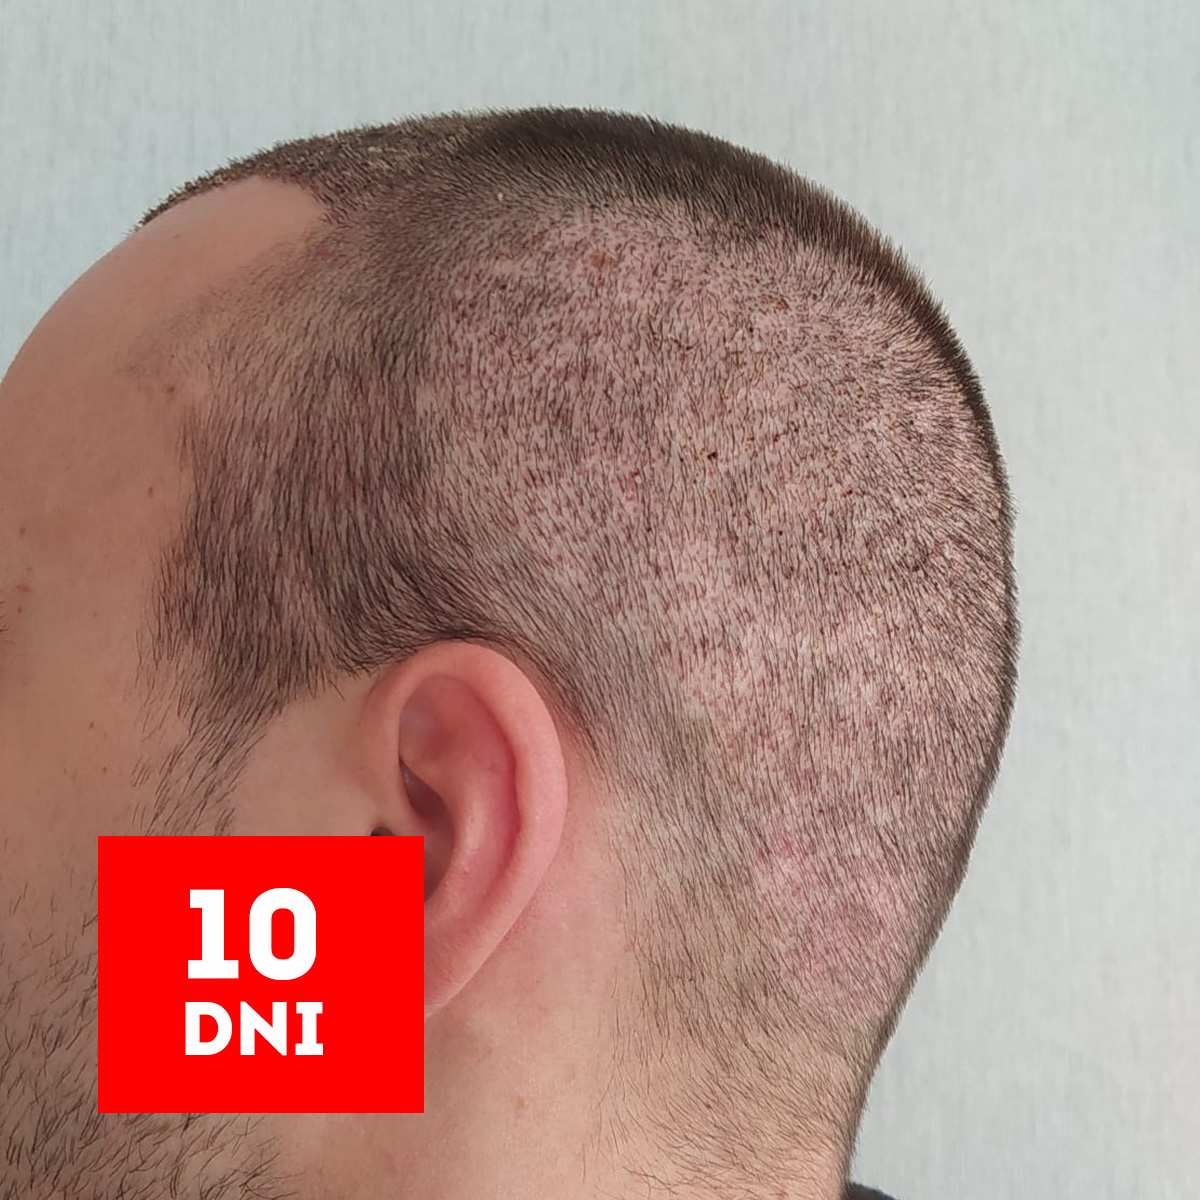 rezultaty 10 dni po przeszczepie włosów